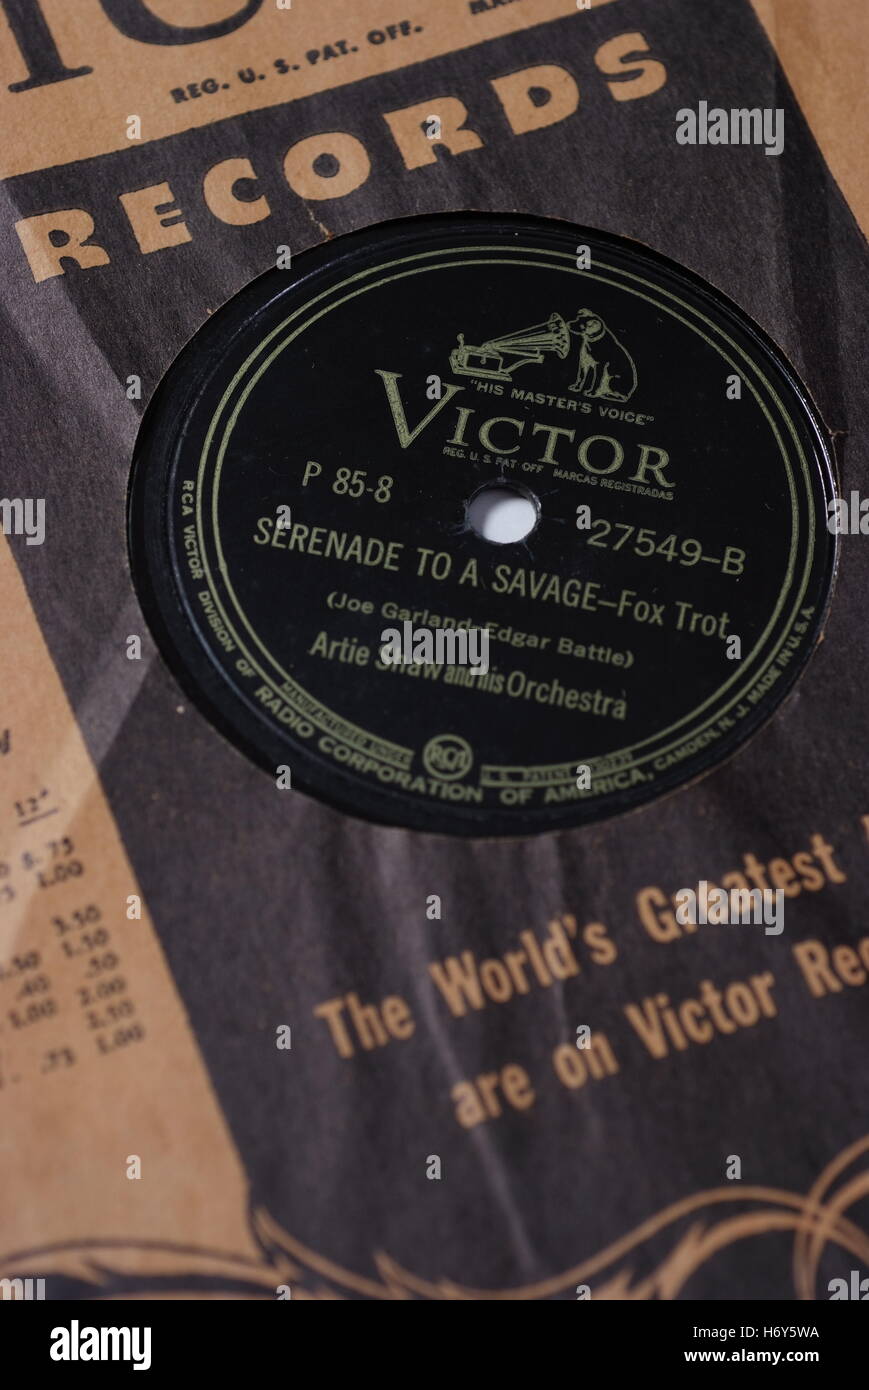 Vintage vinyl 78 rpm record. Stock Photo